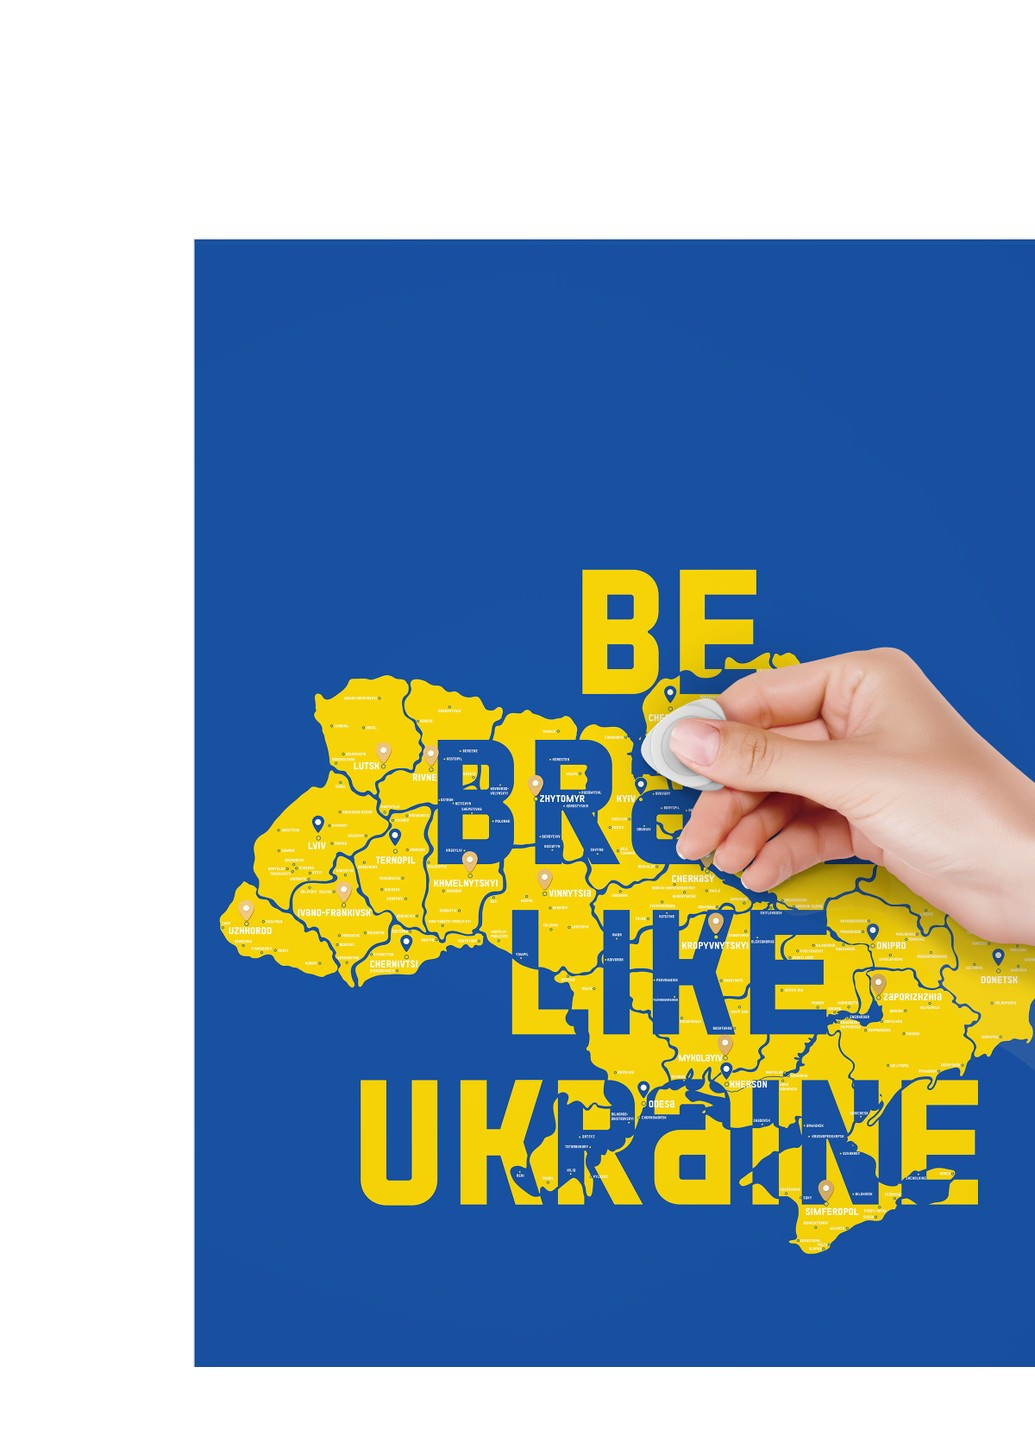 Скретч карта України Travel Map Brave Ukraine 1DEA.me (254288774)